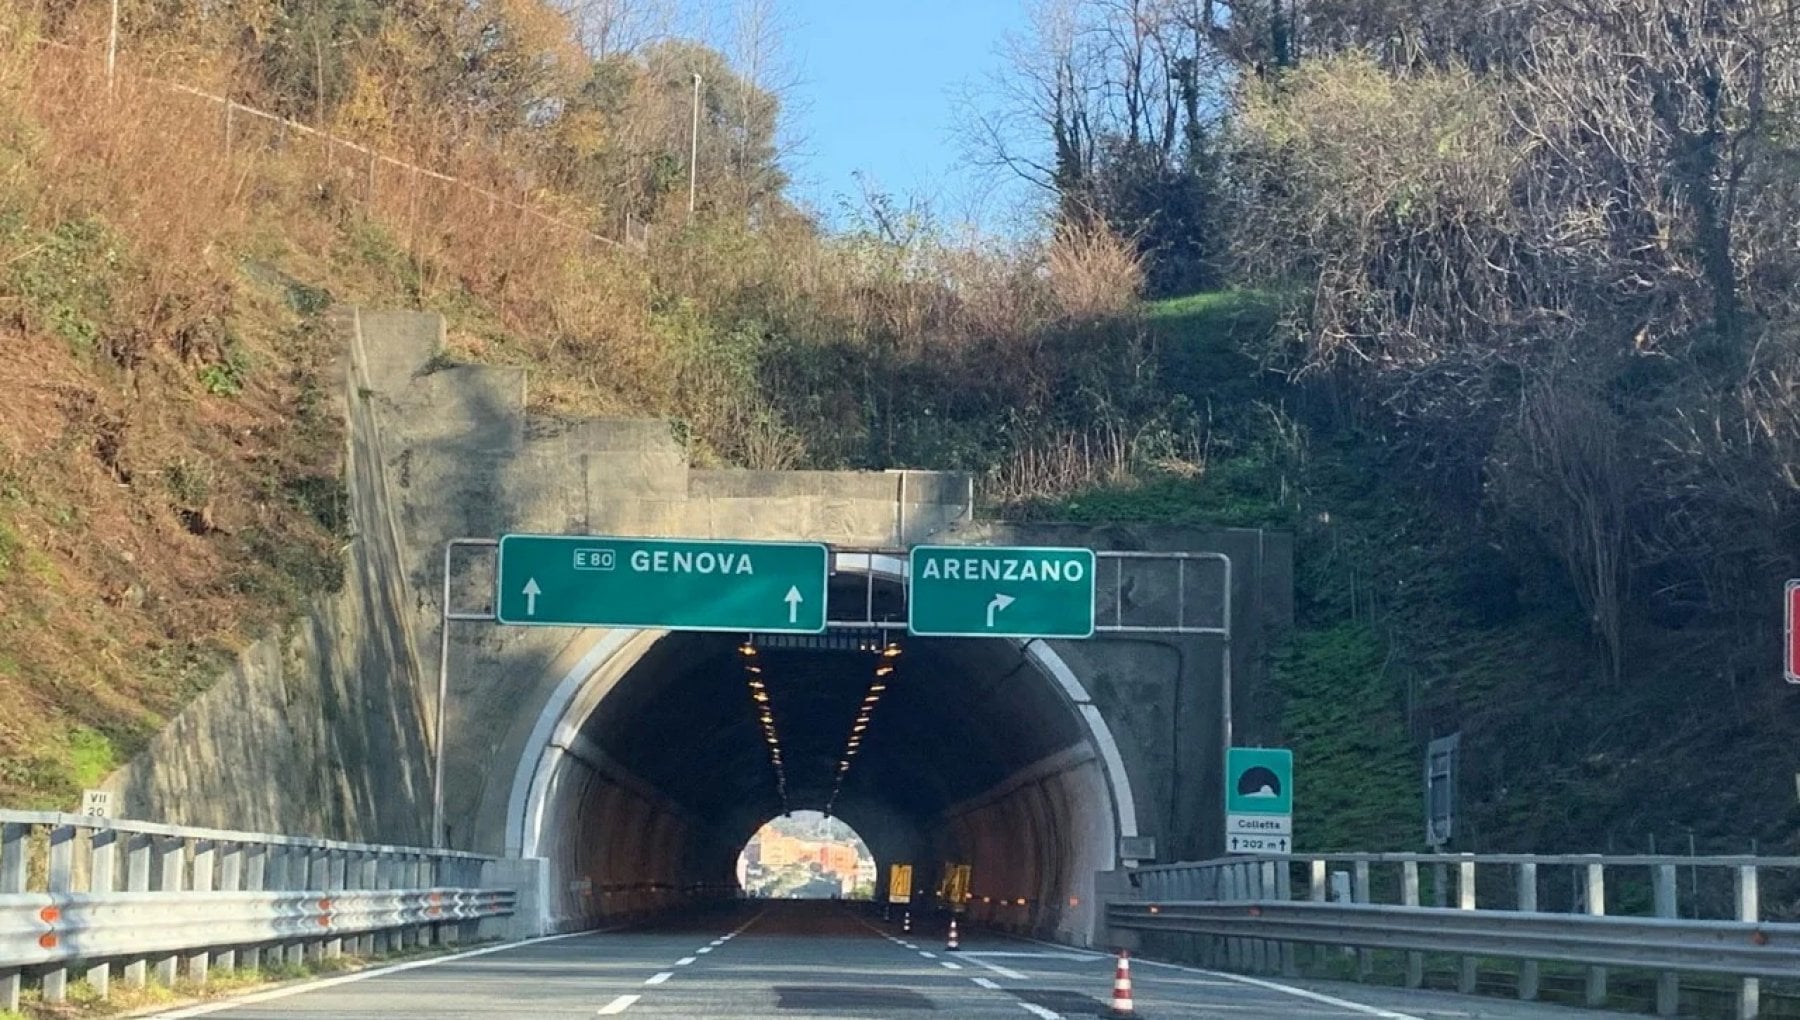 Sulla A10 Genova-Savona dalle 22:00 di martedì 20 alle 6:00 di mercoledì 21 giugno, sarà chiuso il tratto compreso tra Arenzano e l'allacciamento con la A26 Genova Voltri-Gravellona Toce, verso Genova.